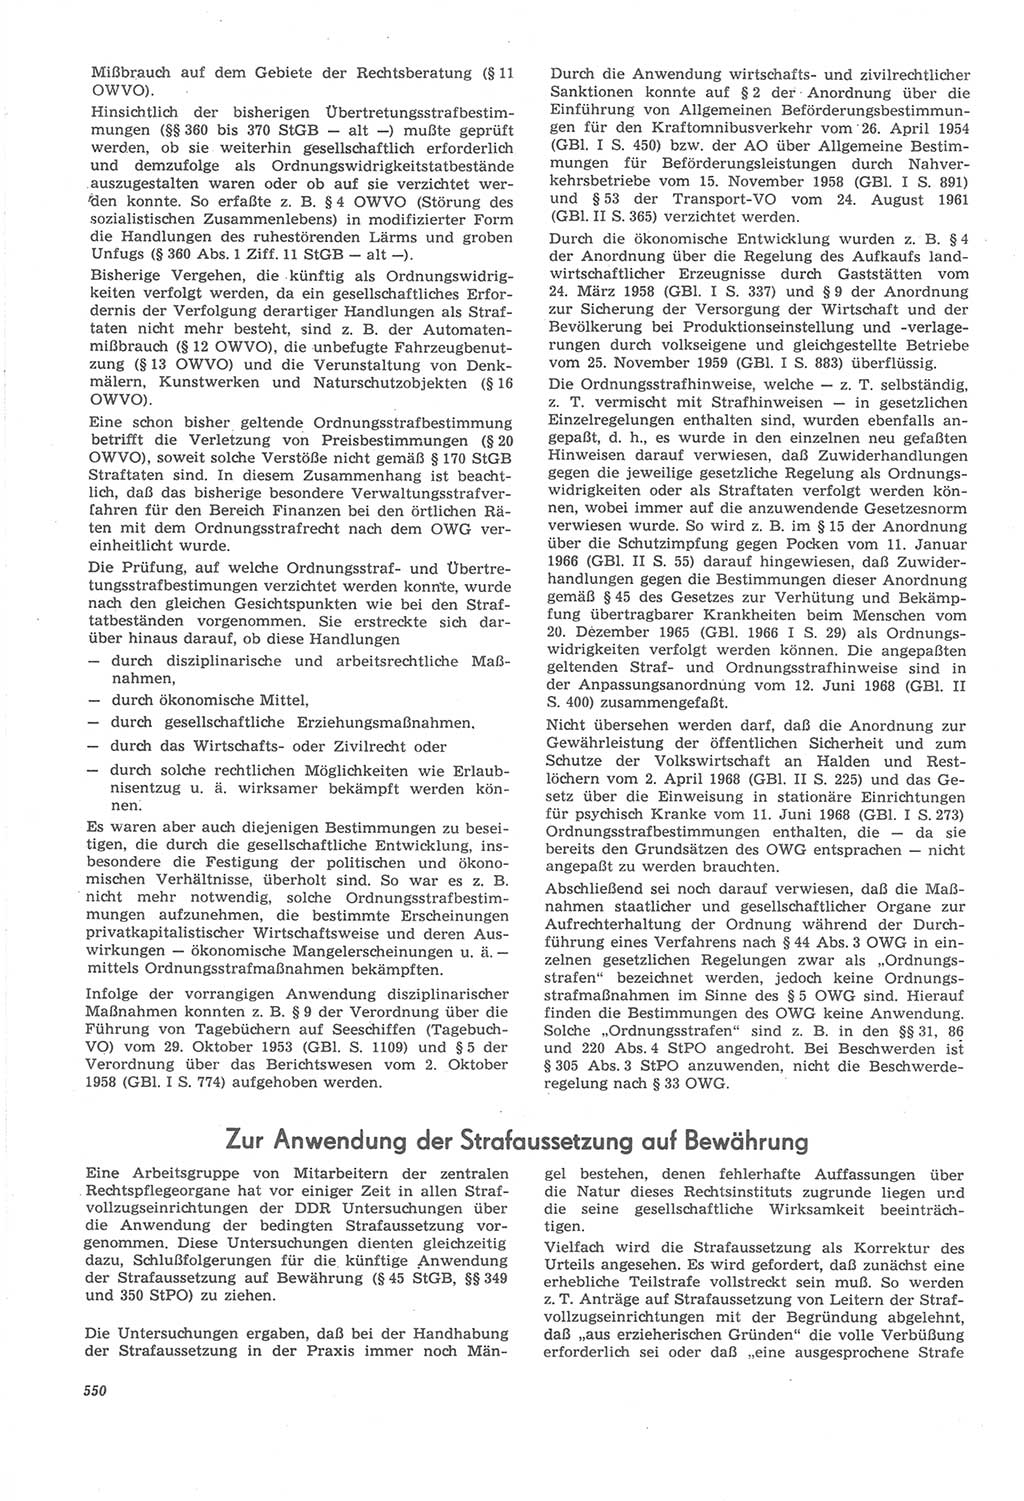 Neue Justiz (NJ), Zeitschrift für Recht und Rechtswissenschaft [Deutsche Demokratische Republik (DDR)], 22. Jahrgang 1968, Seite 550 (NJ DDR 1968, S. 550)